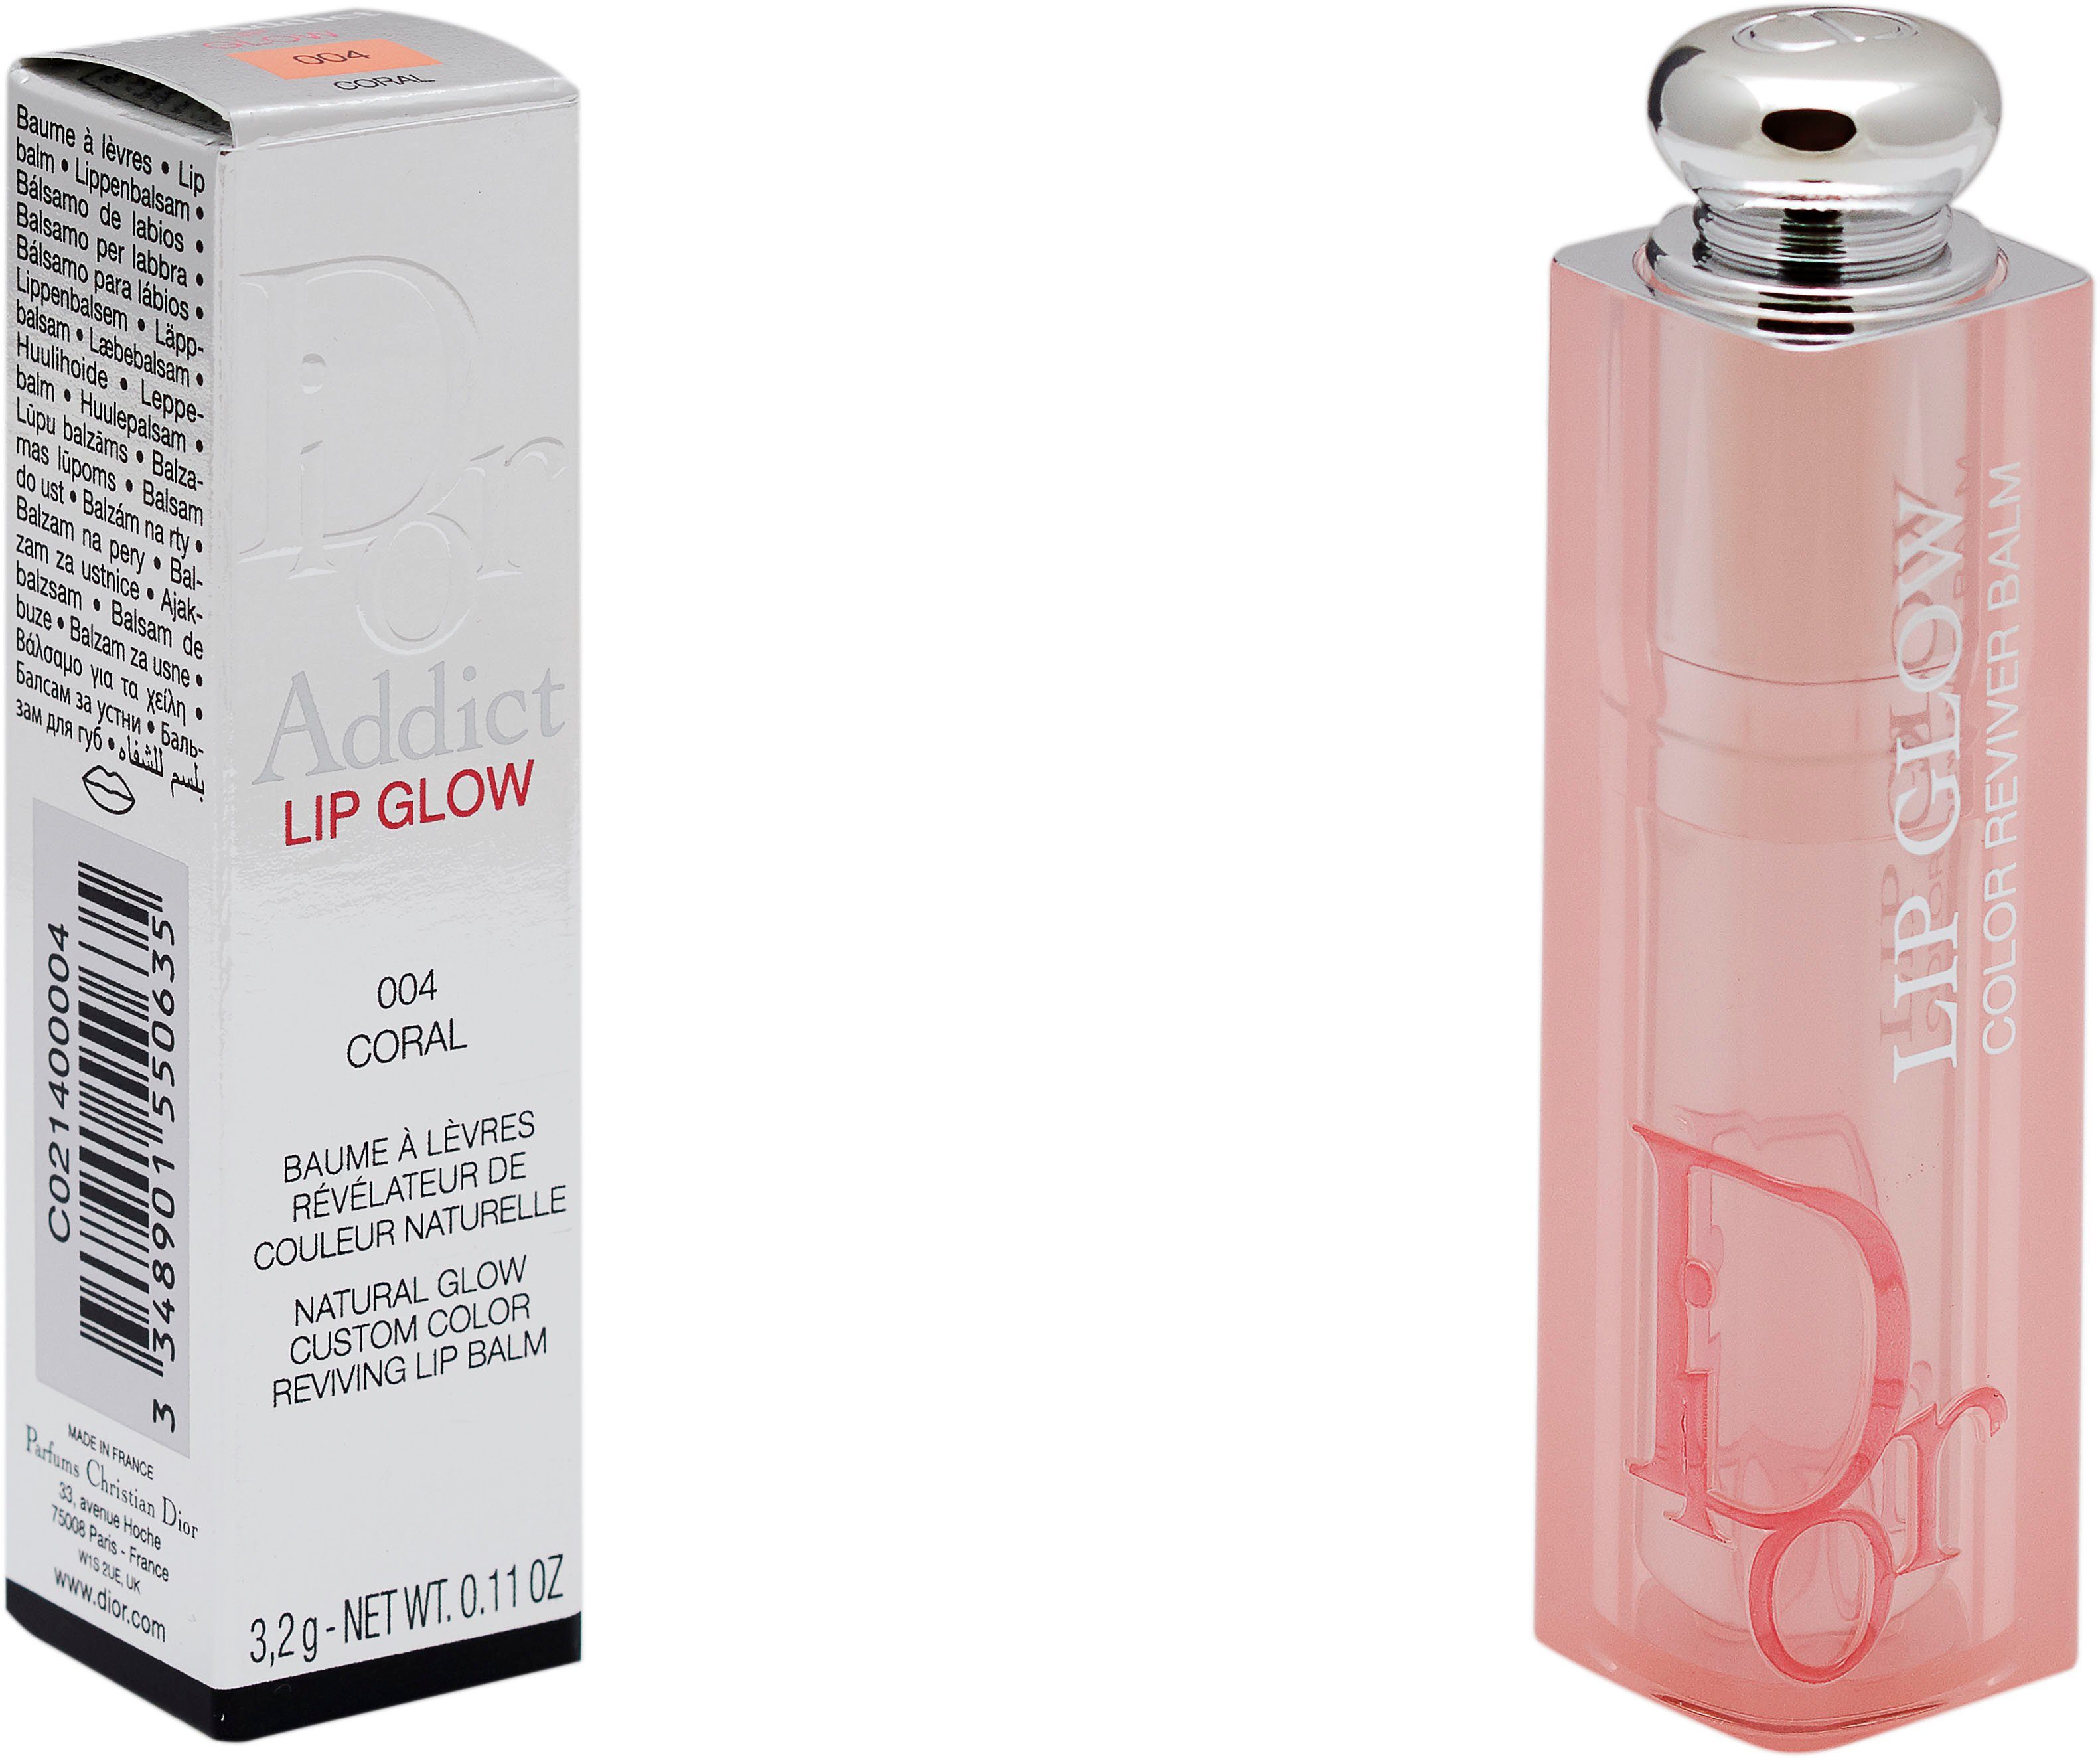 Dior Lippenbalsam Lip Dior Addict Glow 004 Coral